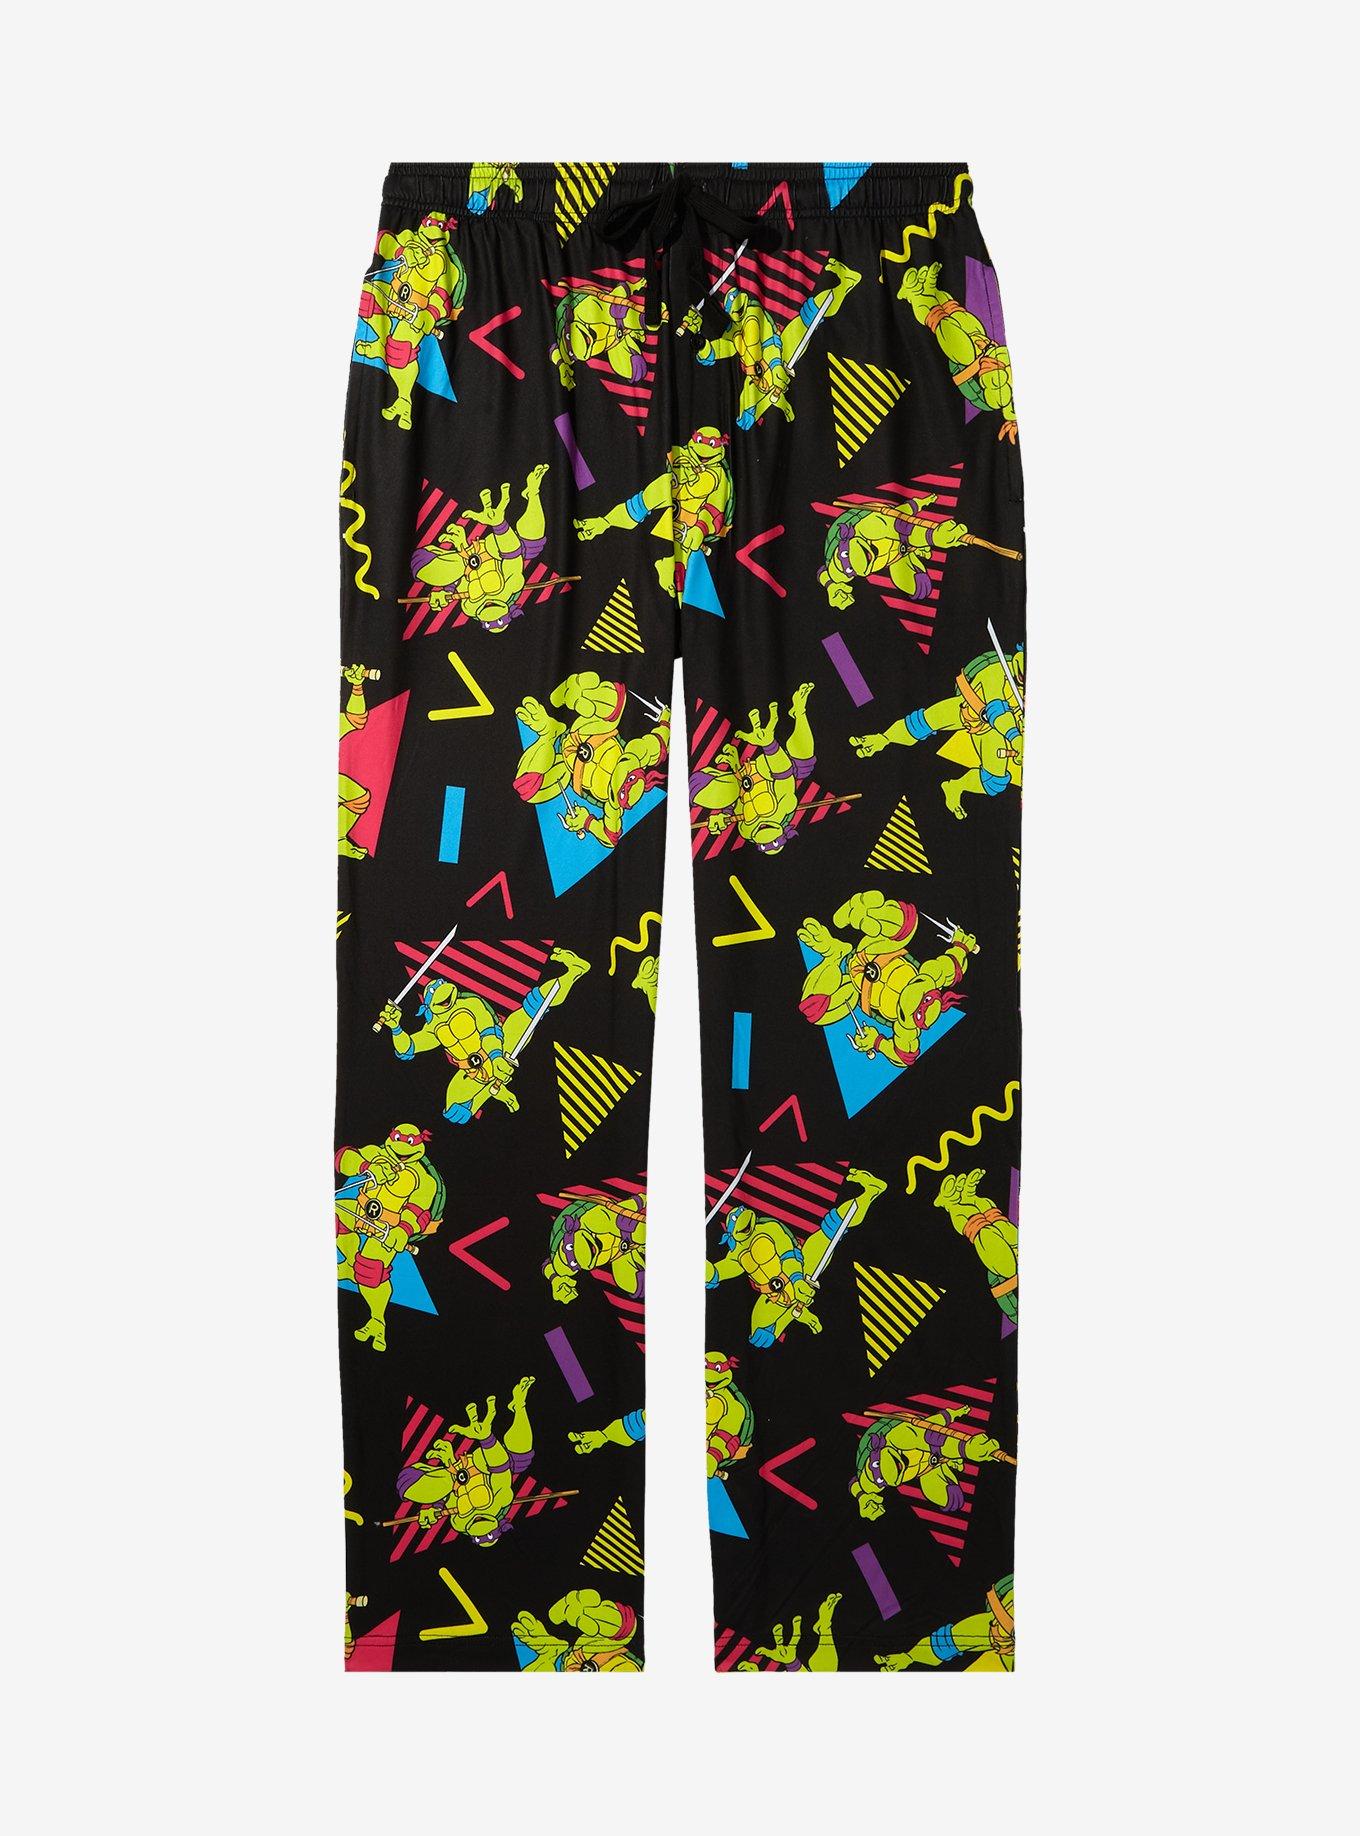 Ninja Turtles Pajama Pants